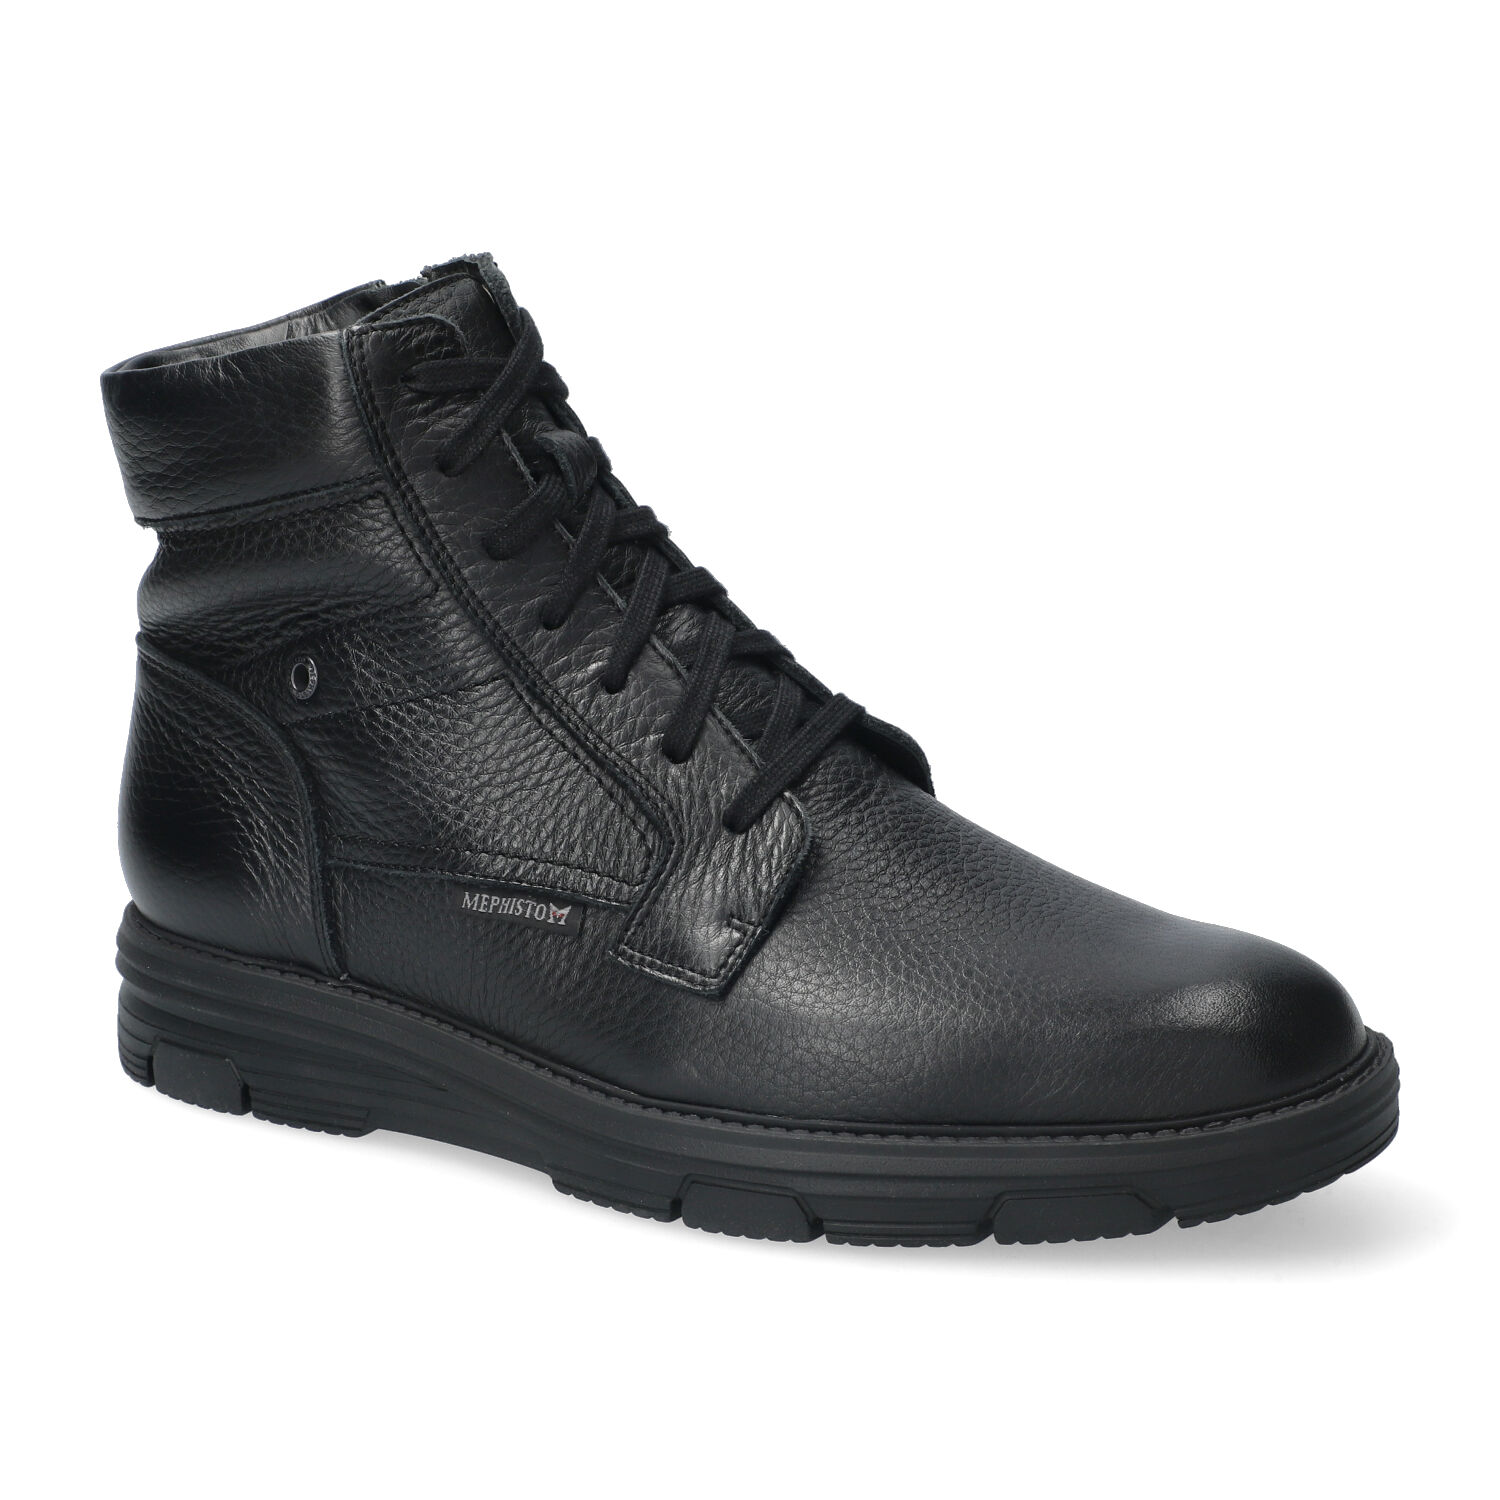 Mephisto-shop Bottines Homme – modèle Cameron Noir - Chaussures confortables